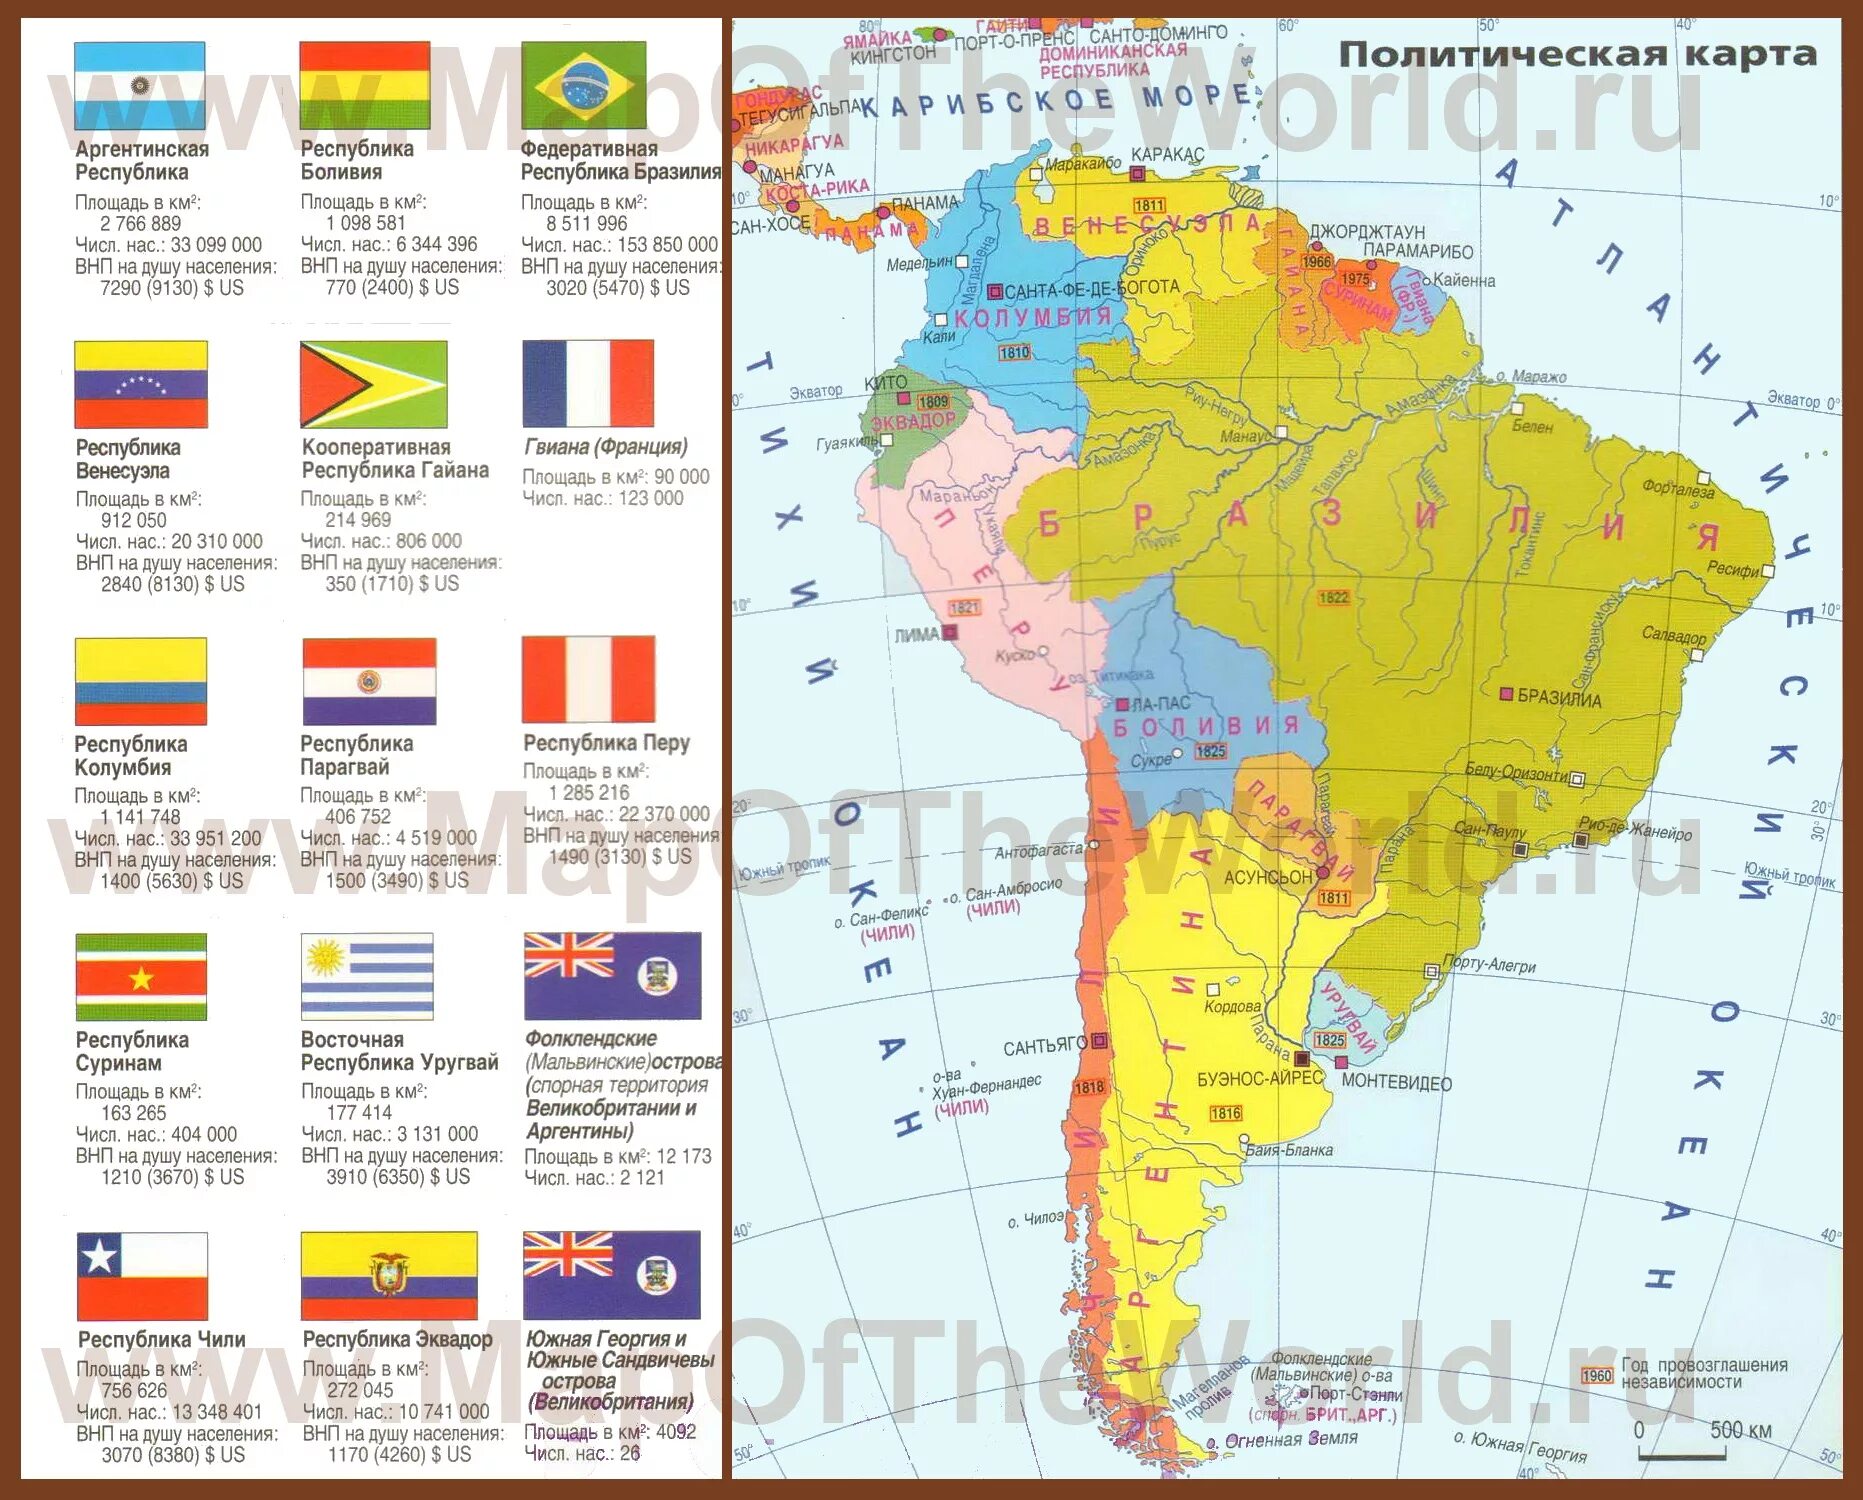 Страны Южной Америки на карте на русском. Политическая карта Южной Америки со странами на русском. Карта Южной Америки политическая на русском языке со странами. Южная Америка политическая карта на русском языке со столицами.